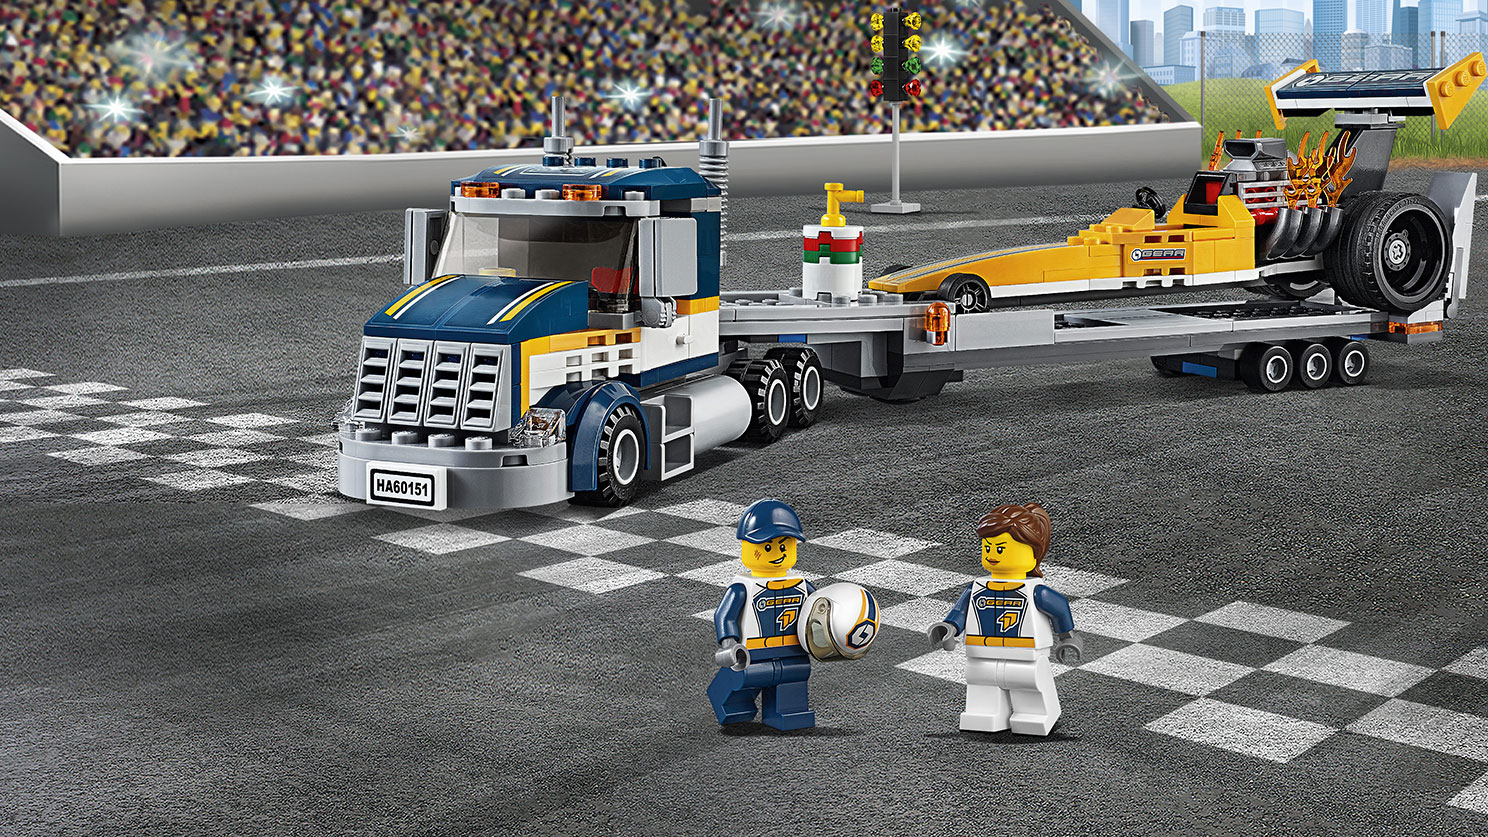 60151 Le transporteur du dragster, Wiki LEGO